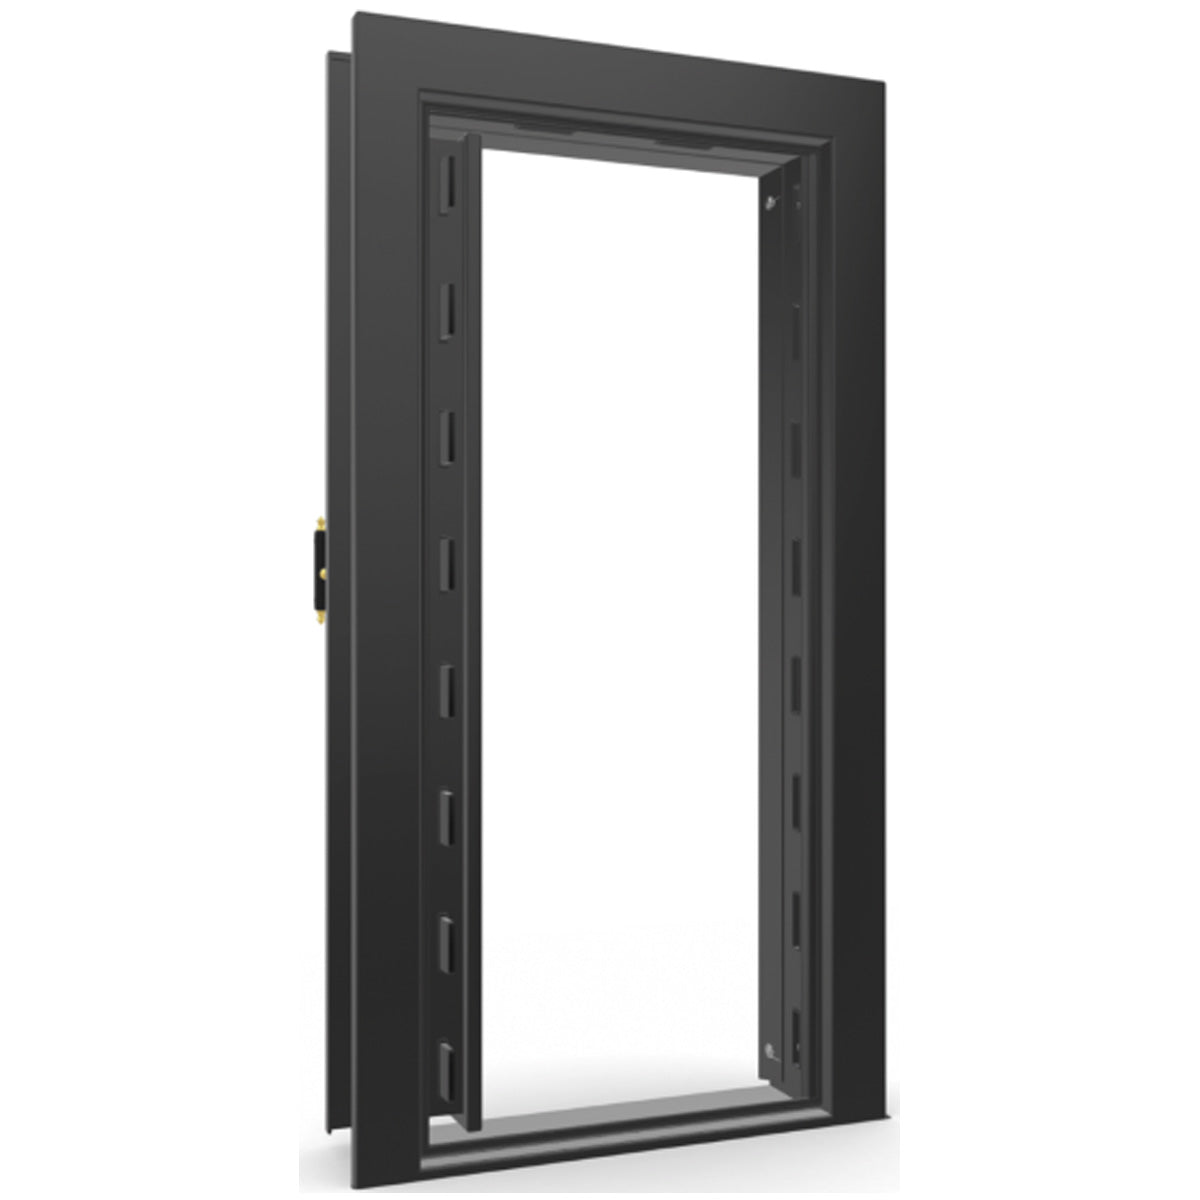 The Beast Vault Door in Black Gloss with Brass Electronic Lock, Left Inswing, door open.